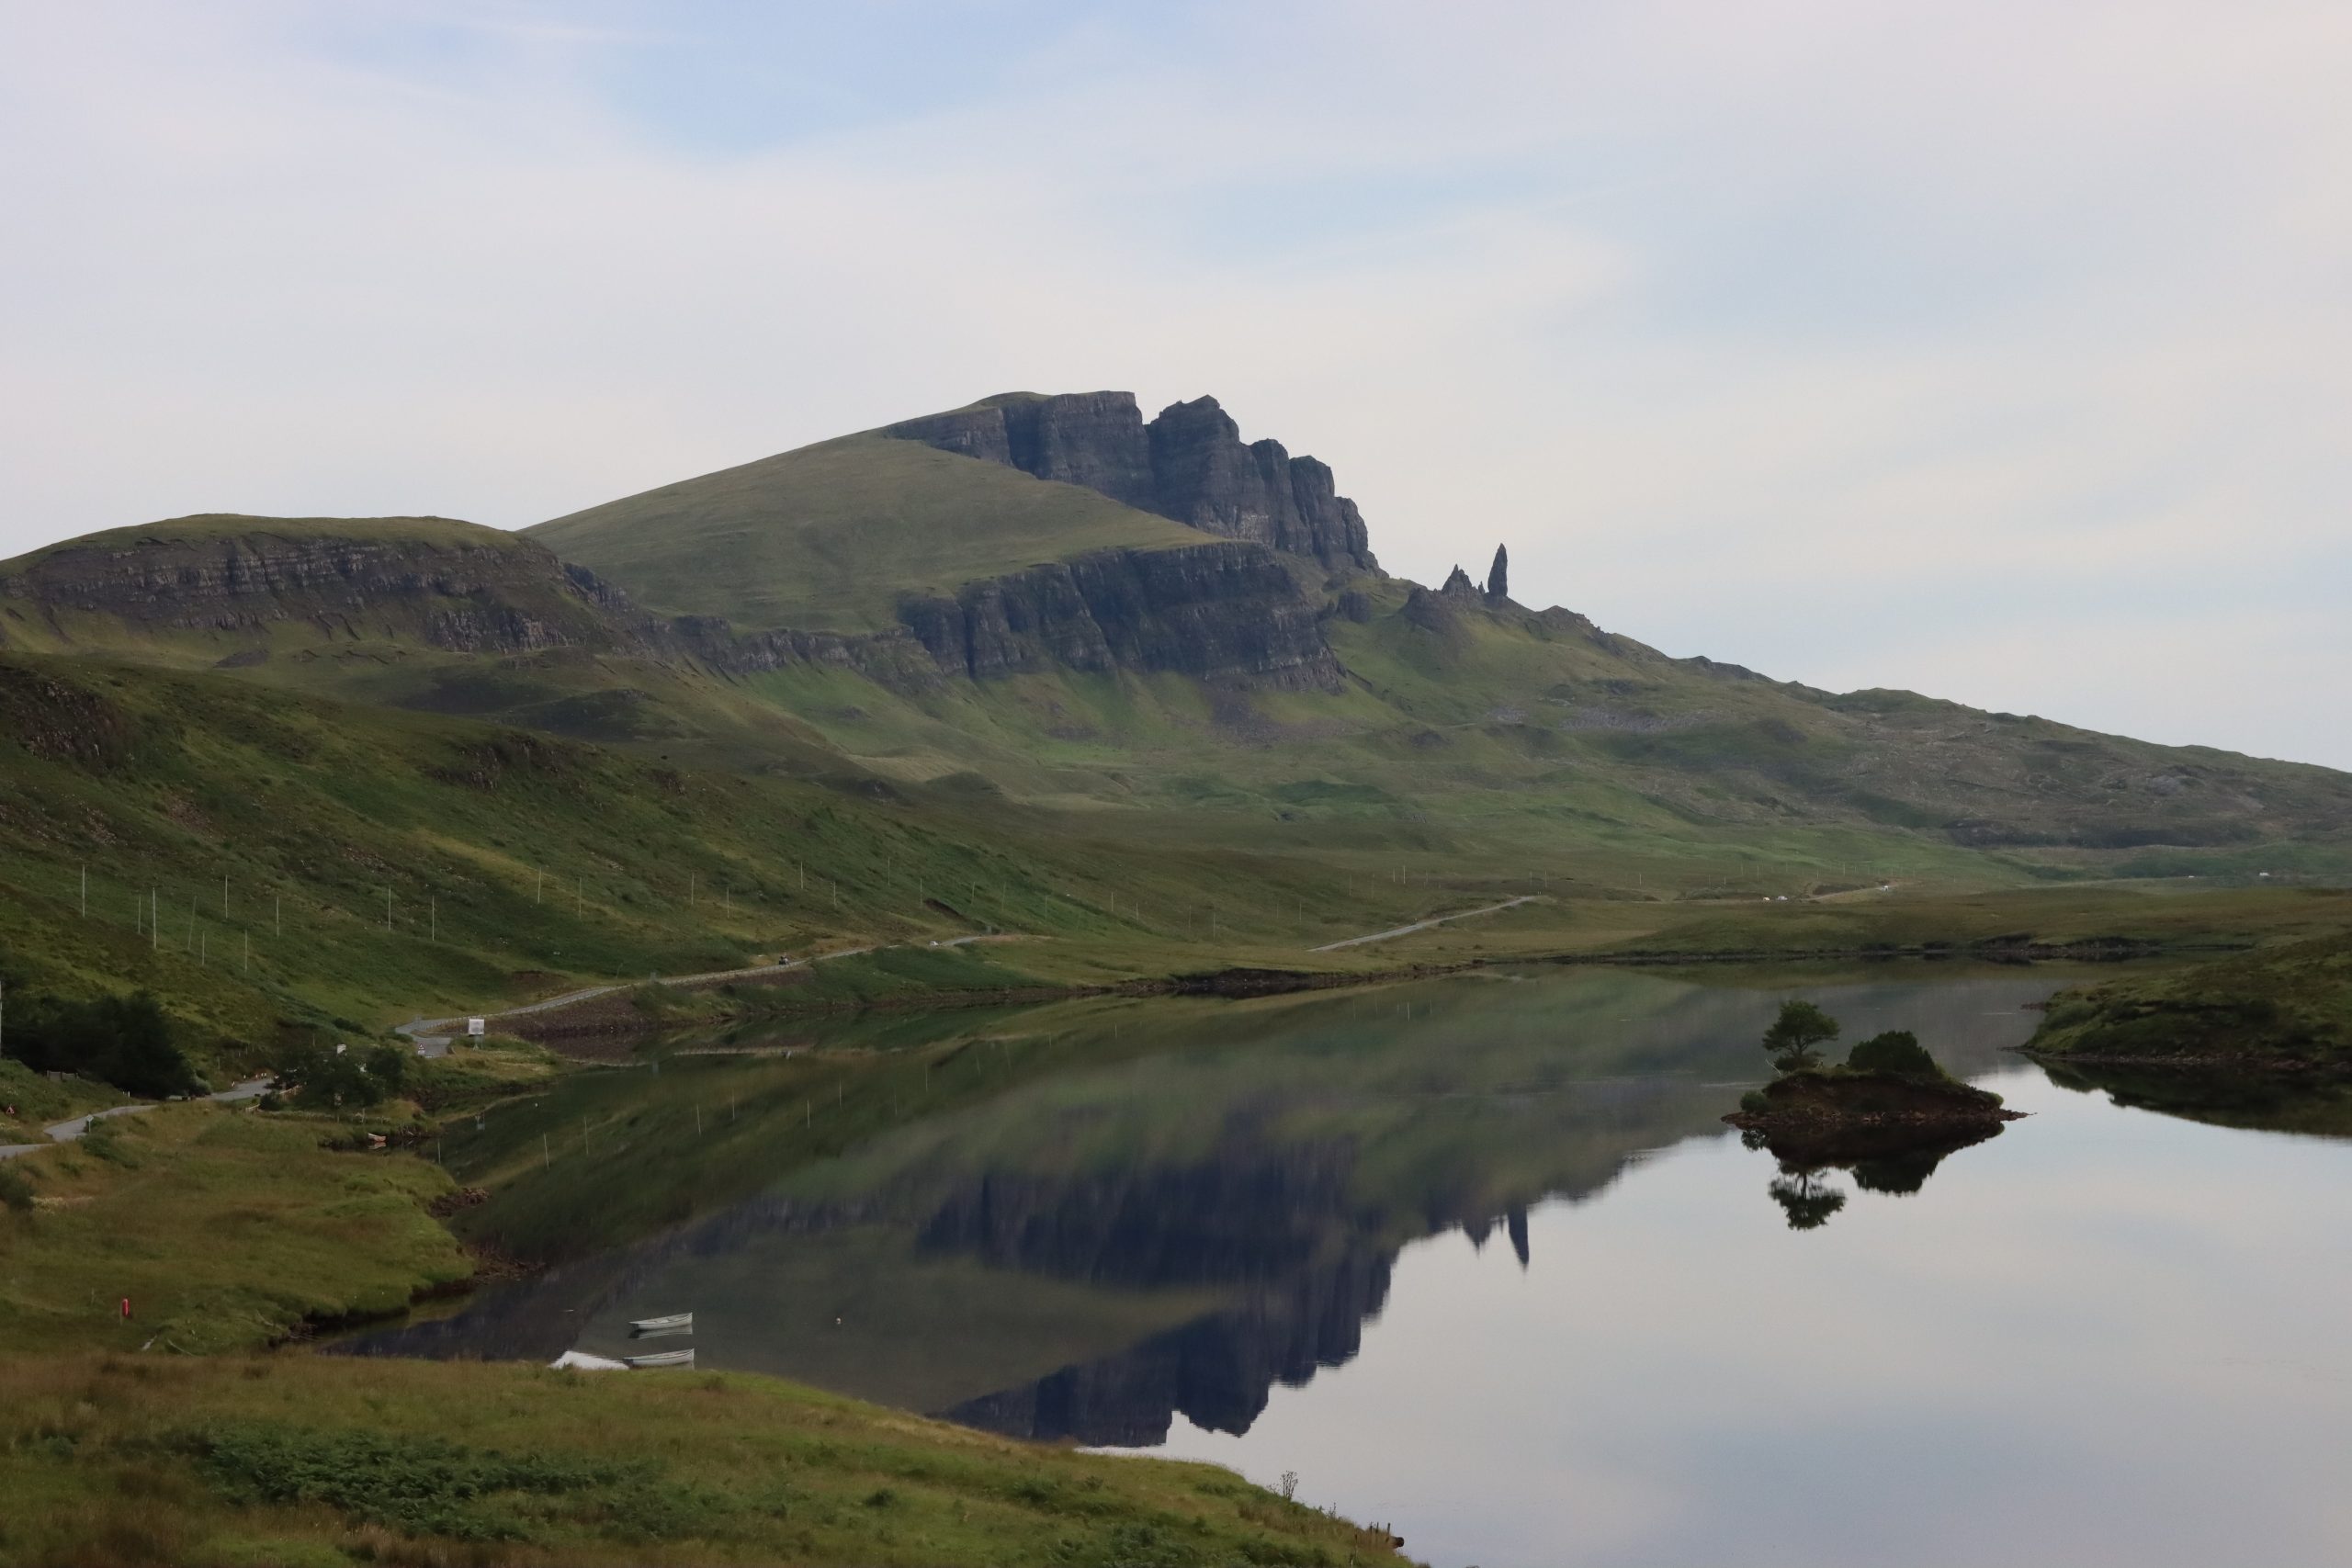 Isle of Skye Old man of storr hike